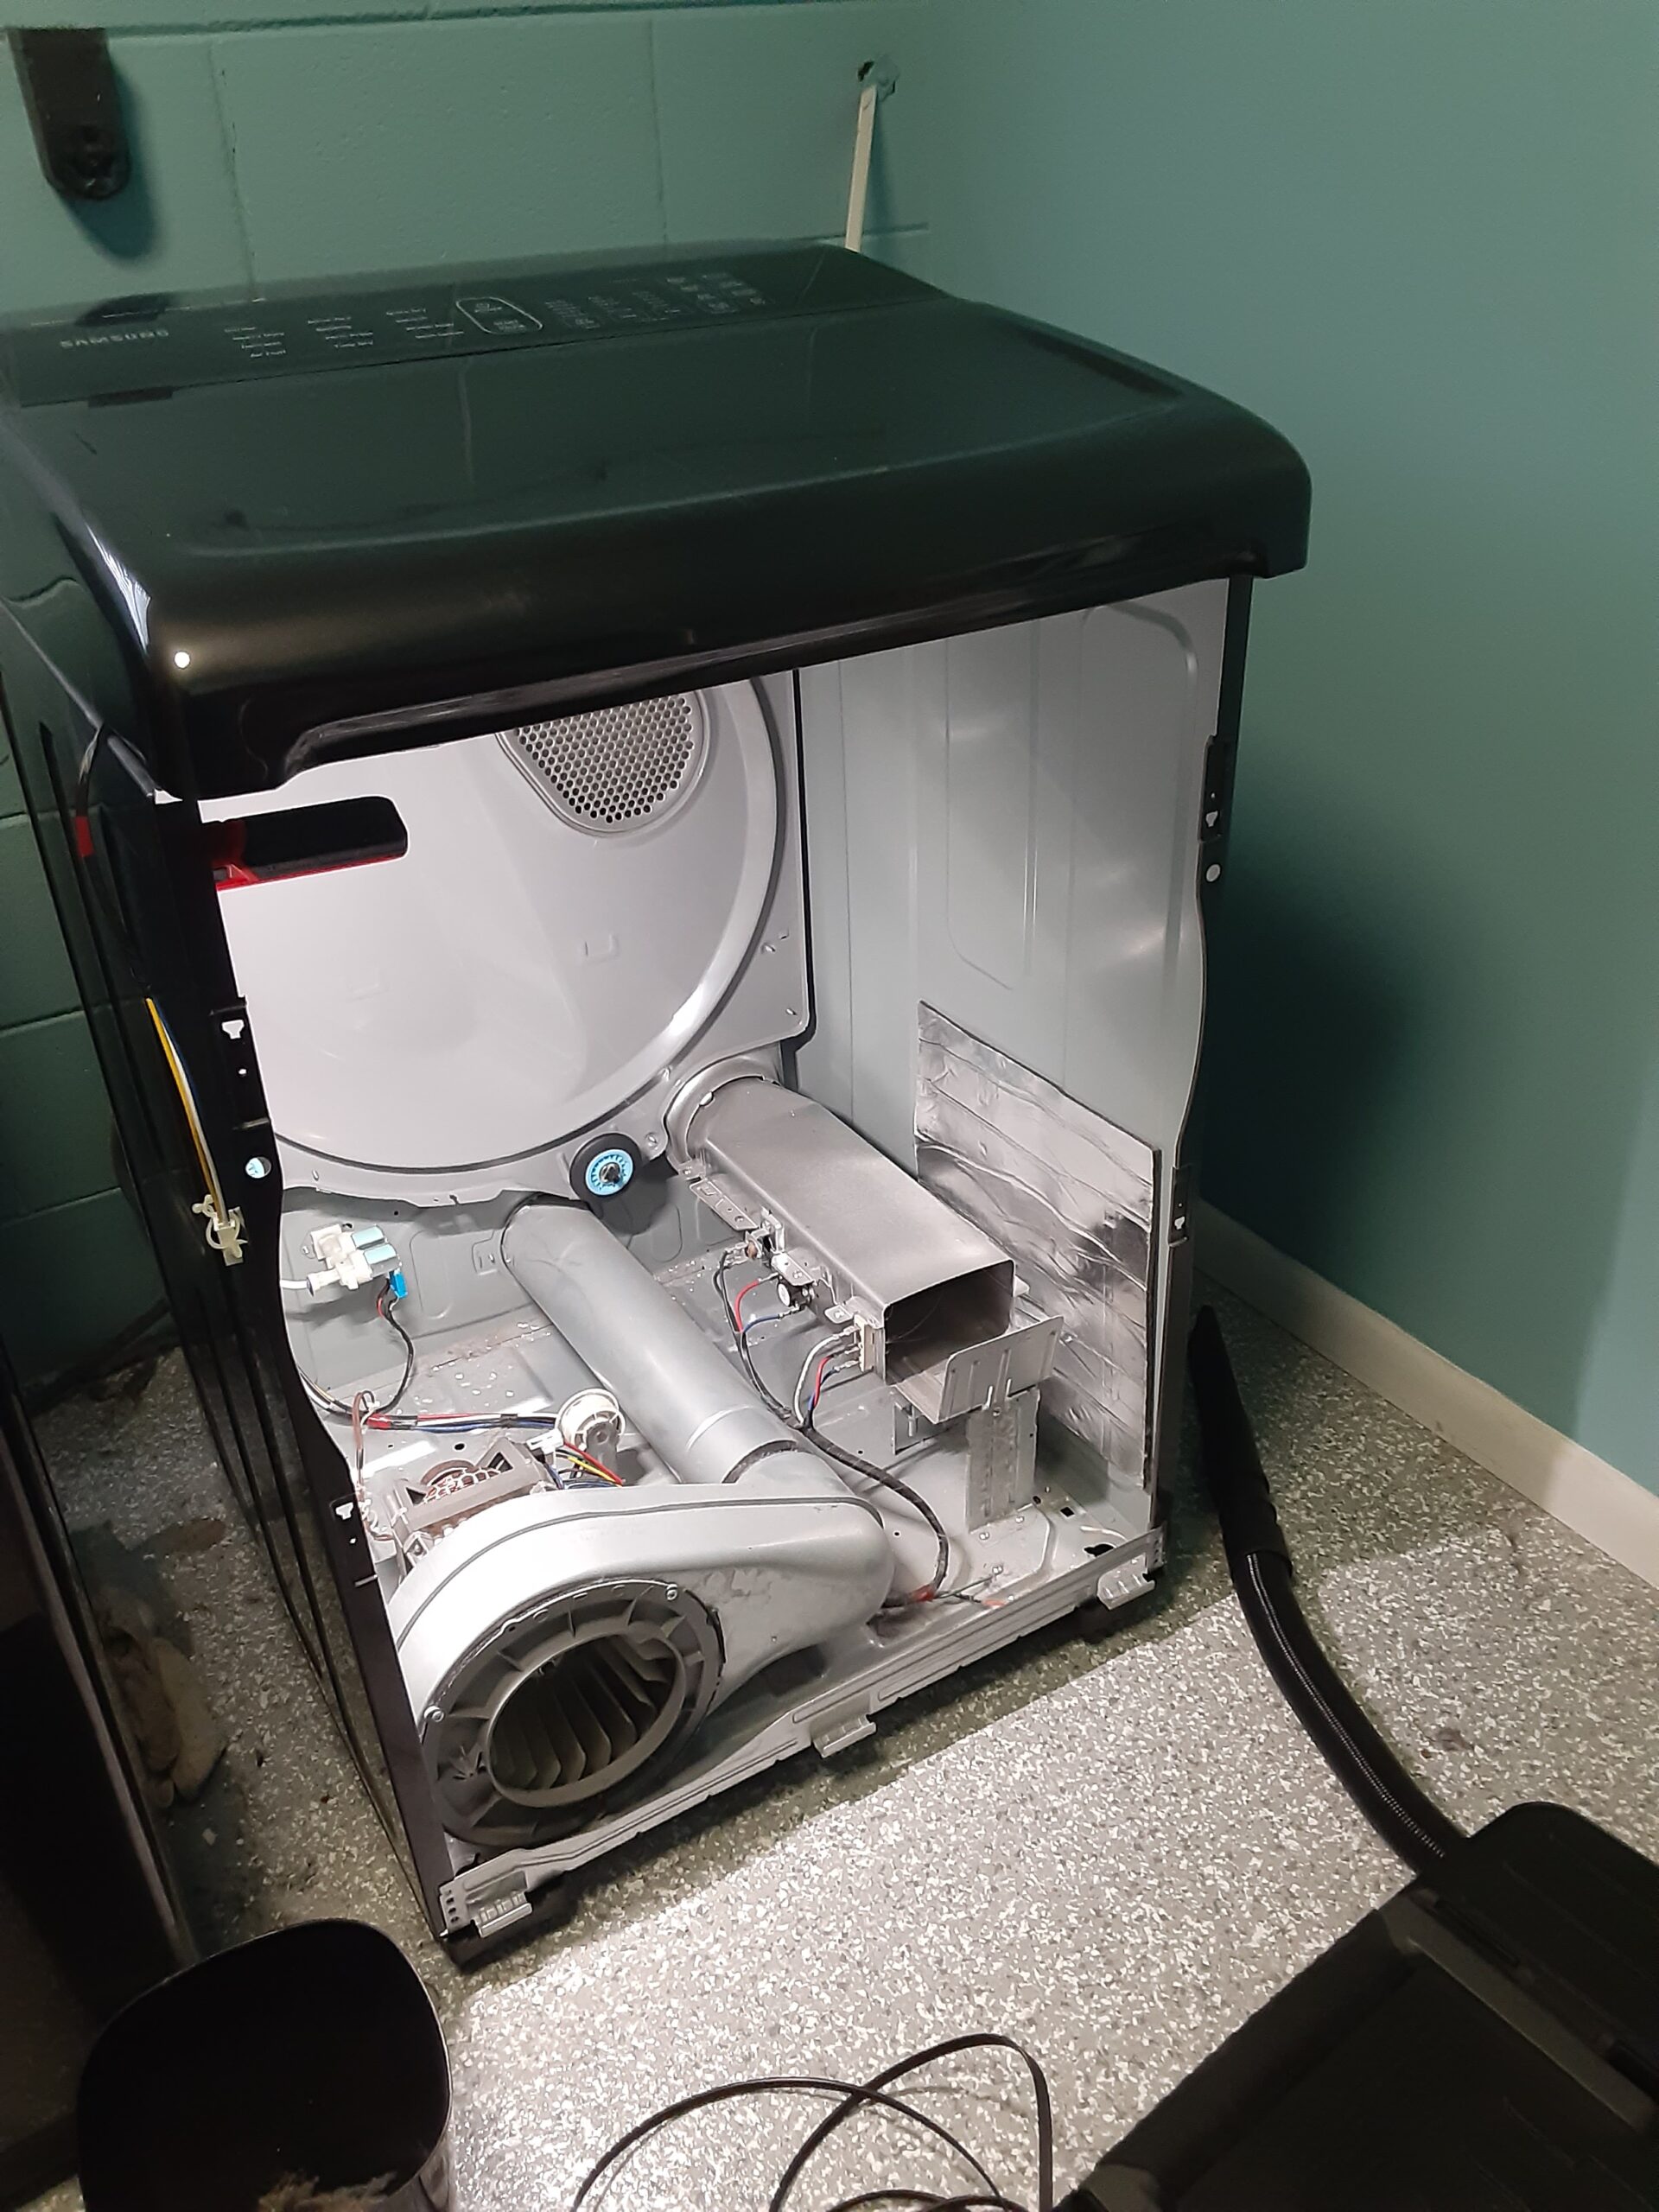 appliance repair dryer repair motor making loud noise farris ave bellview fl 32526